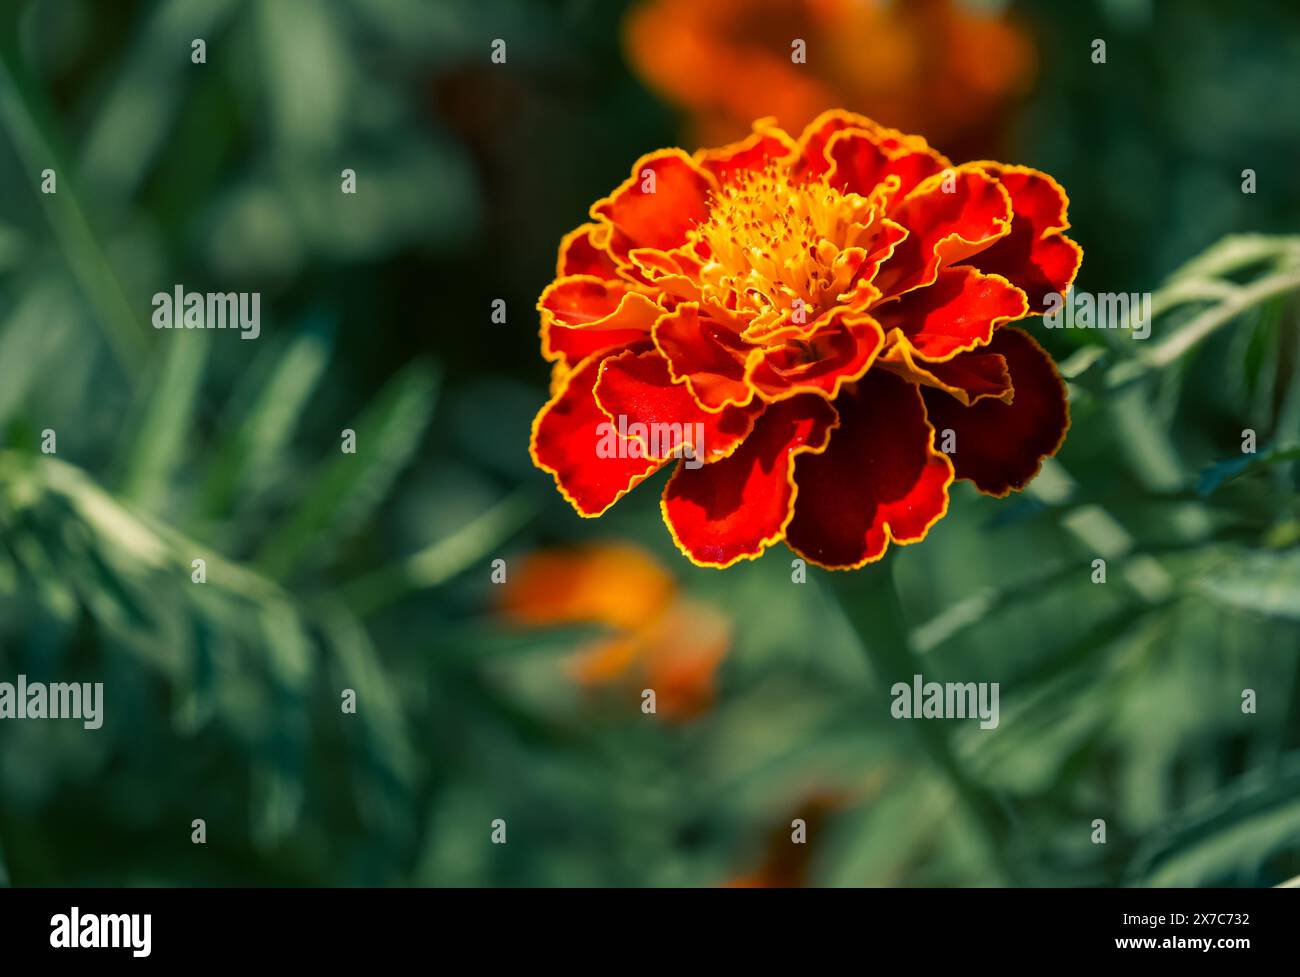 Leuchtend orange Ringelblume: Hellorange Ringelblume mit detaillierten Blütenblättern gegen grünes Laub. Verwendungen: Blumenmuster, Gartenbau-Websites, Pflanzenidentifikation Stockfoto